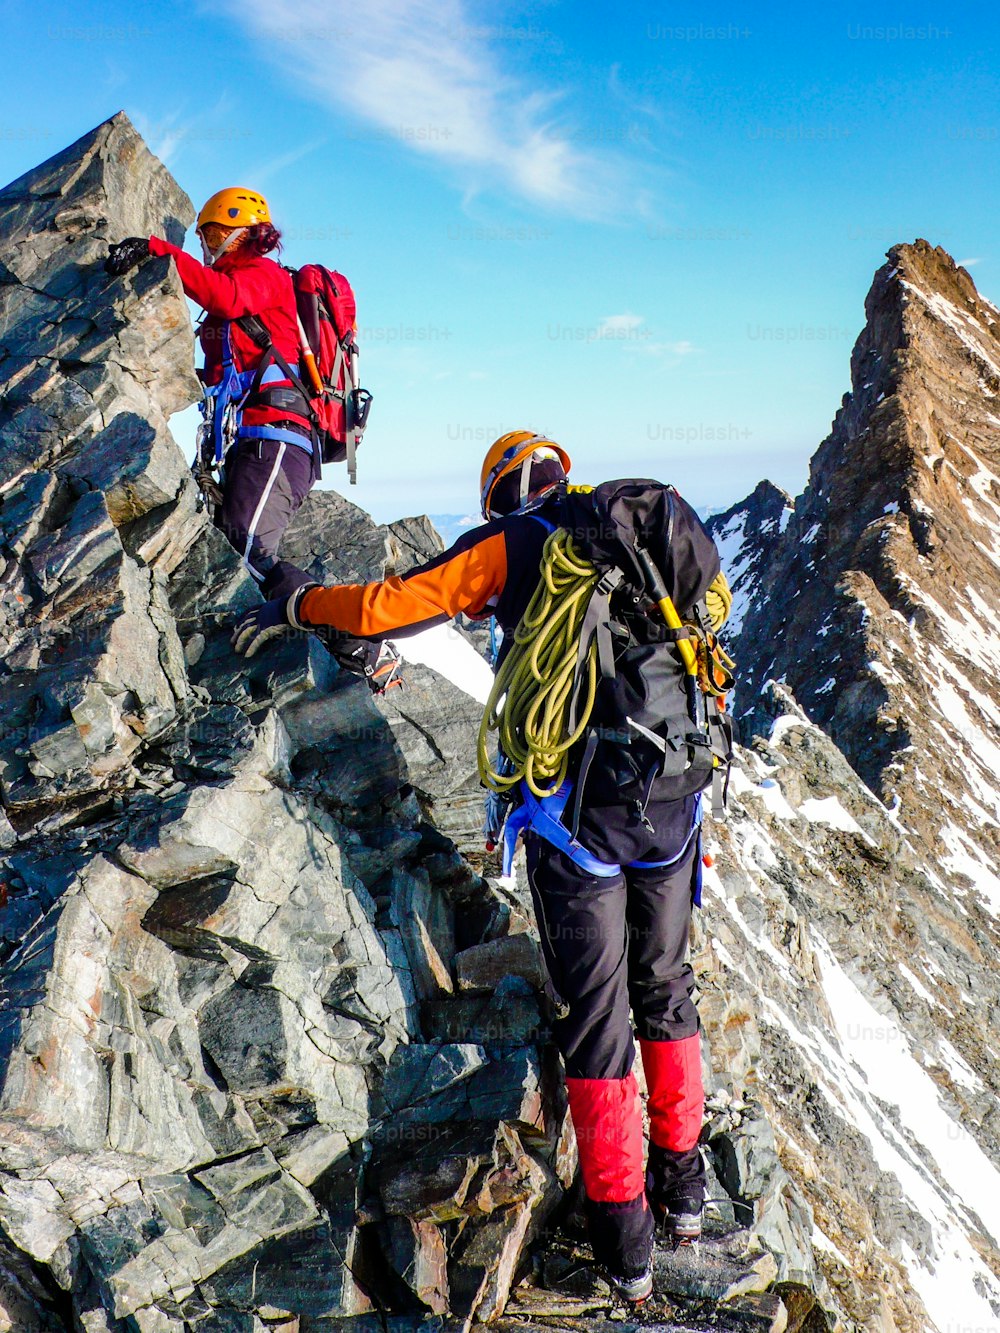 Bergsteiger und Bergsteigerinnen auf einem exponierten Felsgipfelgrat auf dem Weg zu einem hochalpinen Berggipfel bei Zermatt in den Schweizer Alpen